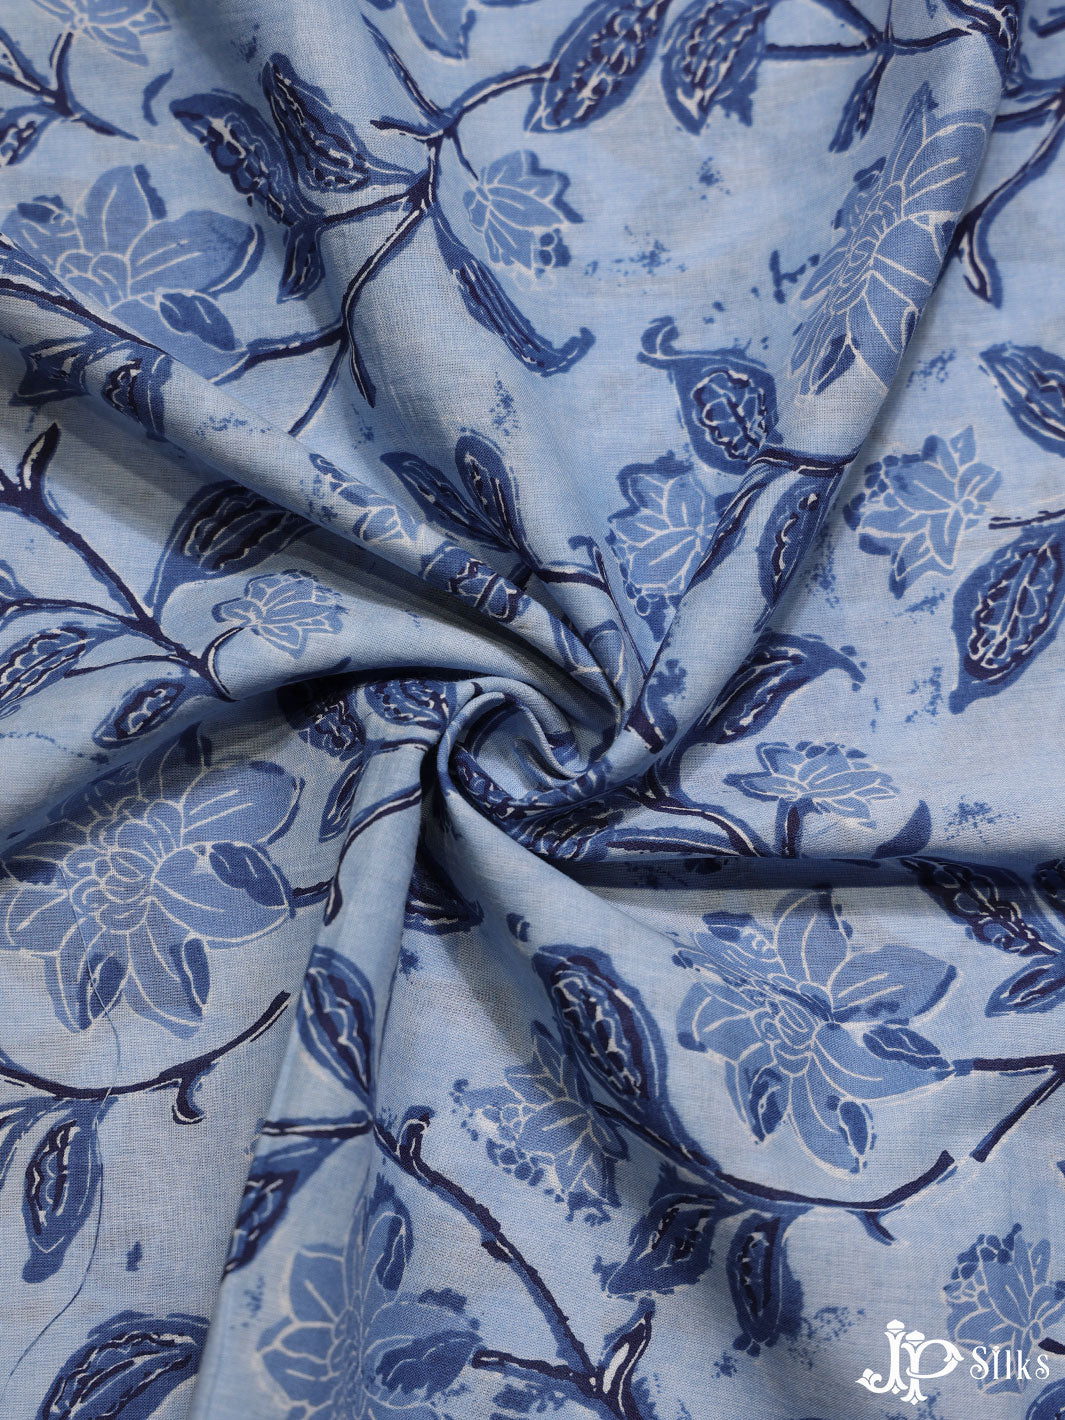 Sky Blue Floral Design Cotton Fabric - D1778 - View 3